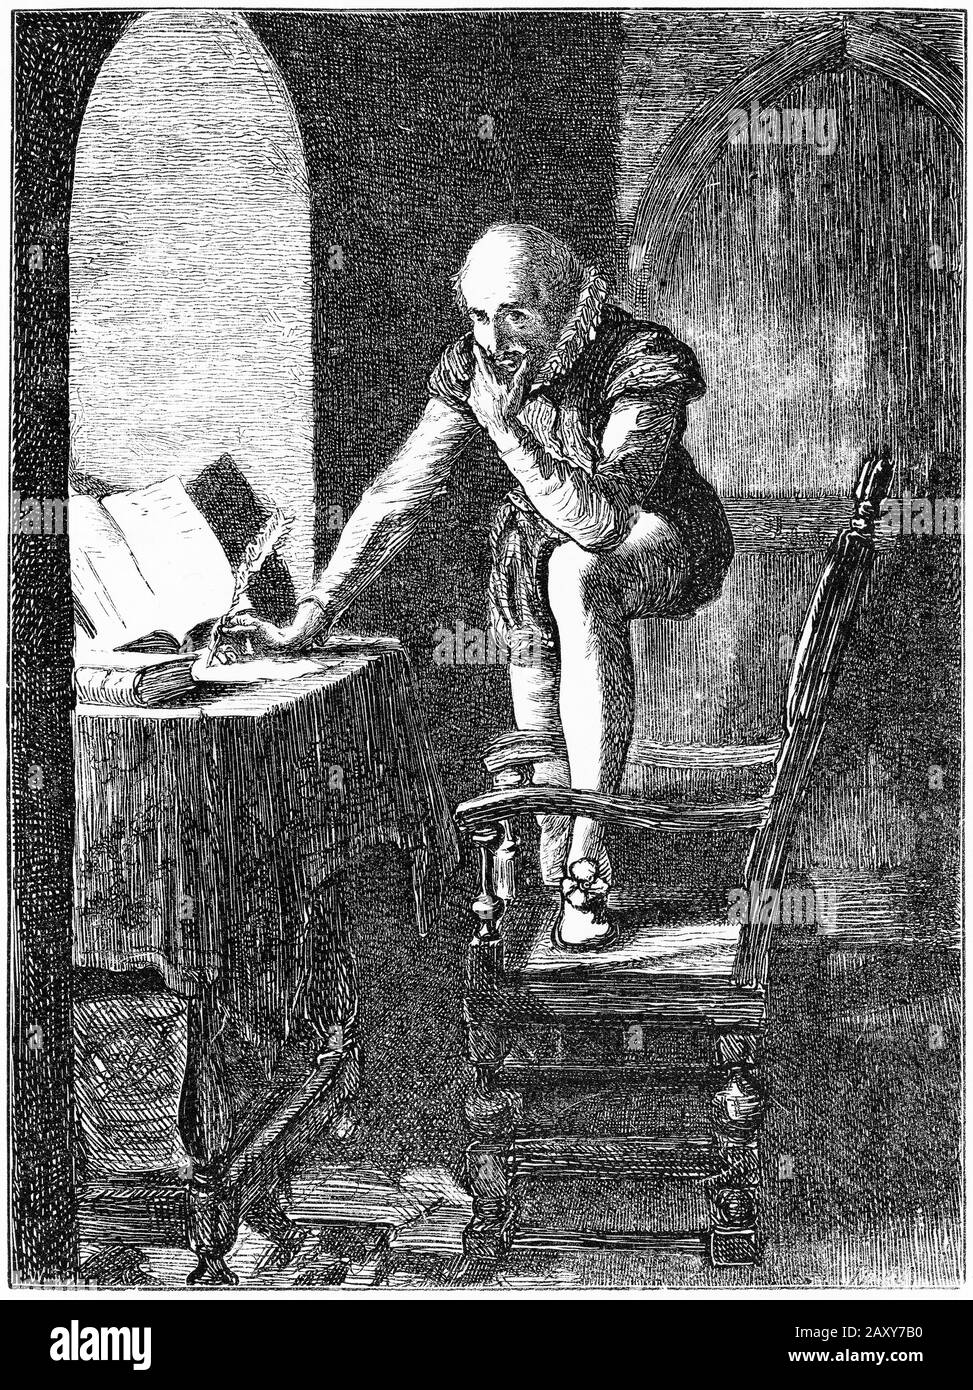 Gravur von Sir Walter Raleigh (ca. 1552 - 1618), englischer Landad-Gentleman, Schriftsteller, Dichter, Soldat, Politiker, Höfling, Spion und Entdecker. Raleigh war eine der bemerkenswertesten Persönlichkeiten der elisabethanischen Zeit, aber er wurde hingerichtet, um die Spanier zu besänftigen, nachdem er einen Vertrag von 1604 gebrochen hatte. Stockfoto